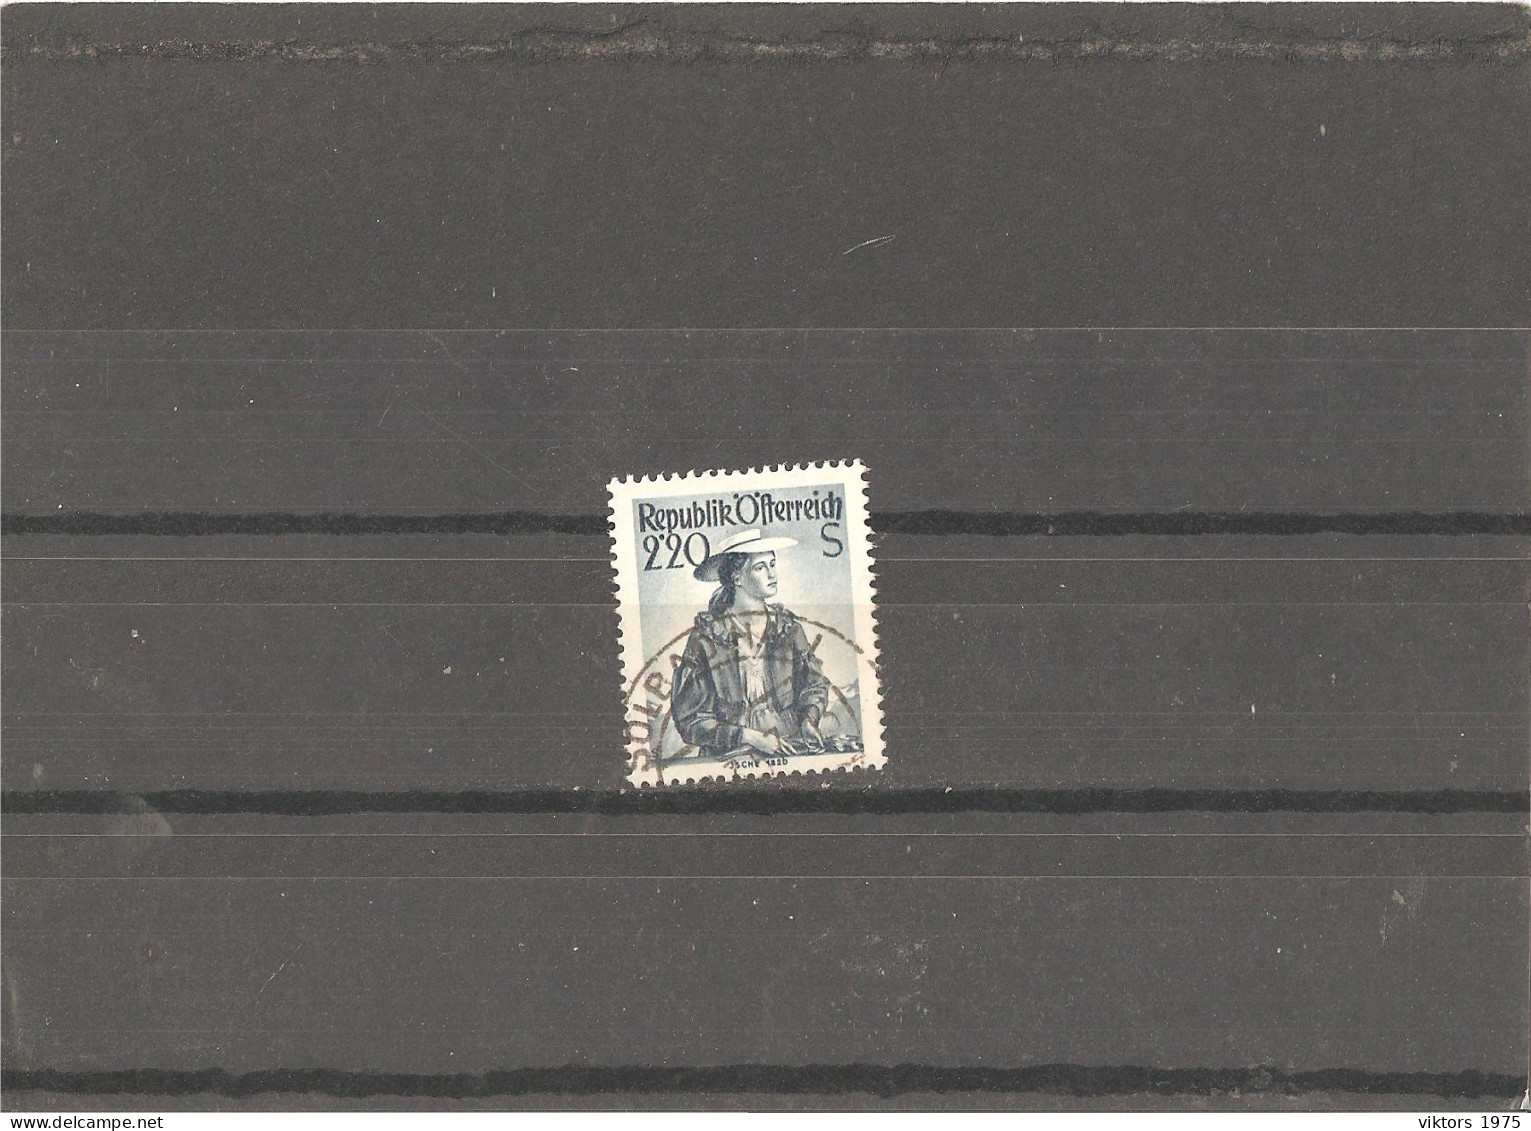 Used Stamp Nr.978 In MICHEL Catalog - Usati